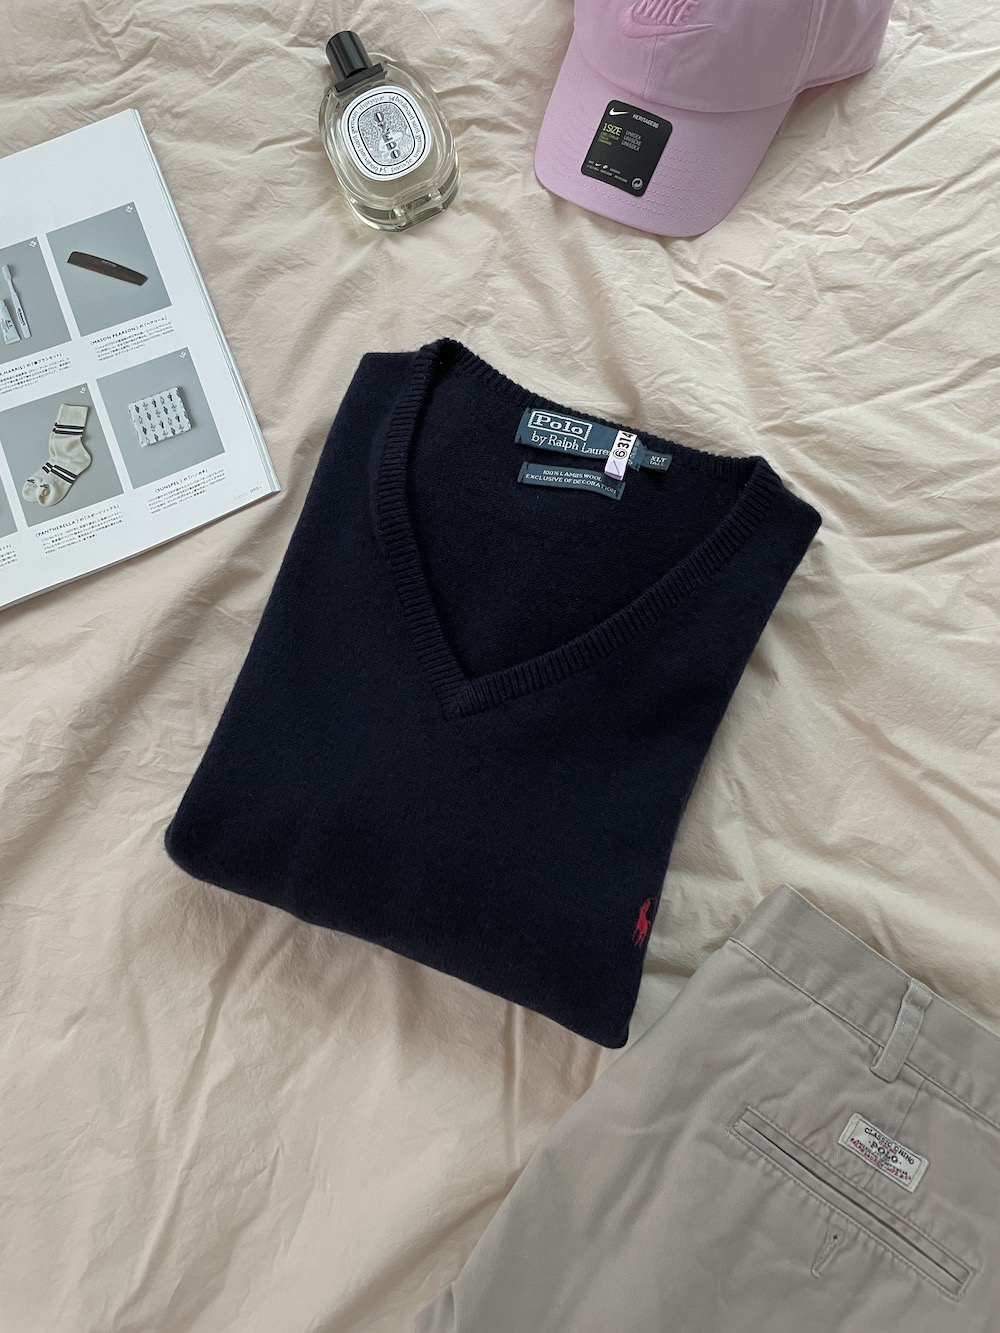 [ XLT ] Polo Ralph Lauren Sweater (6245)